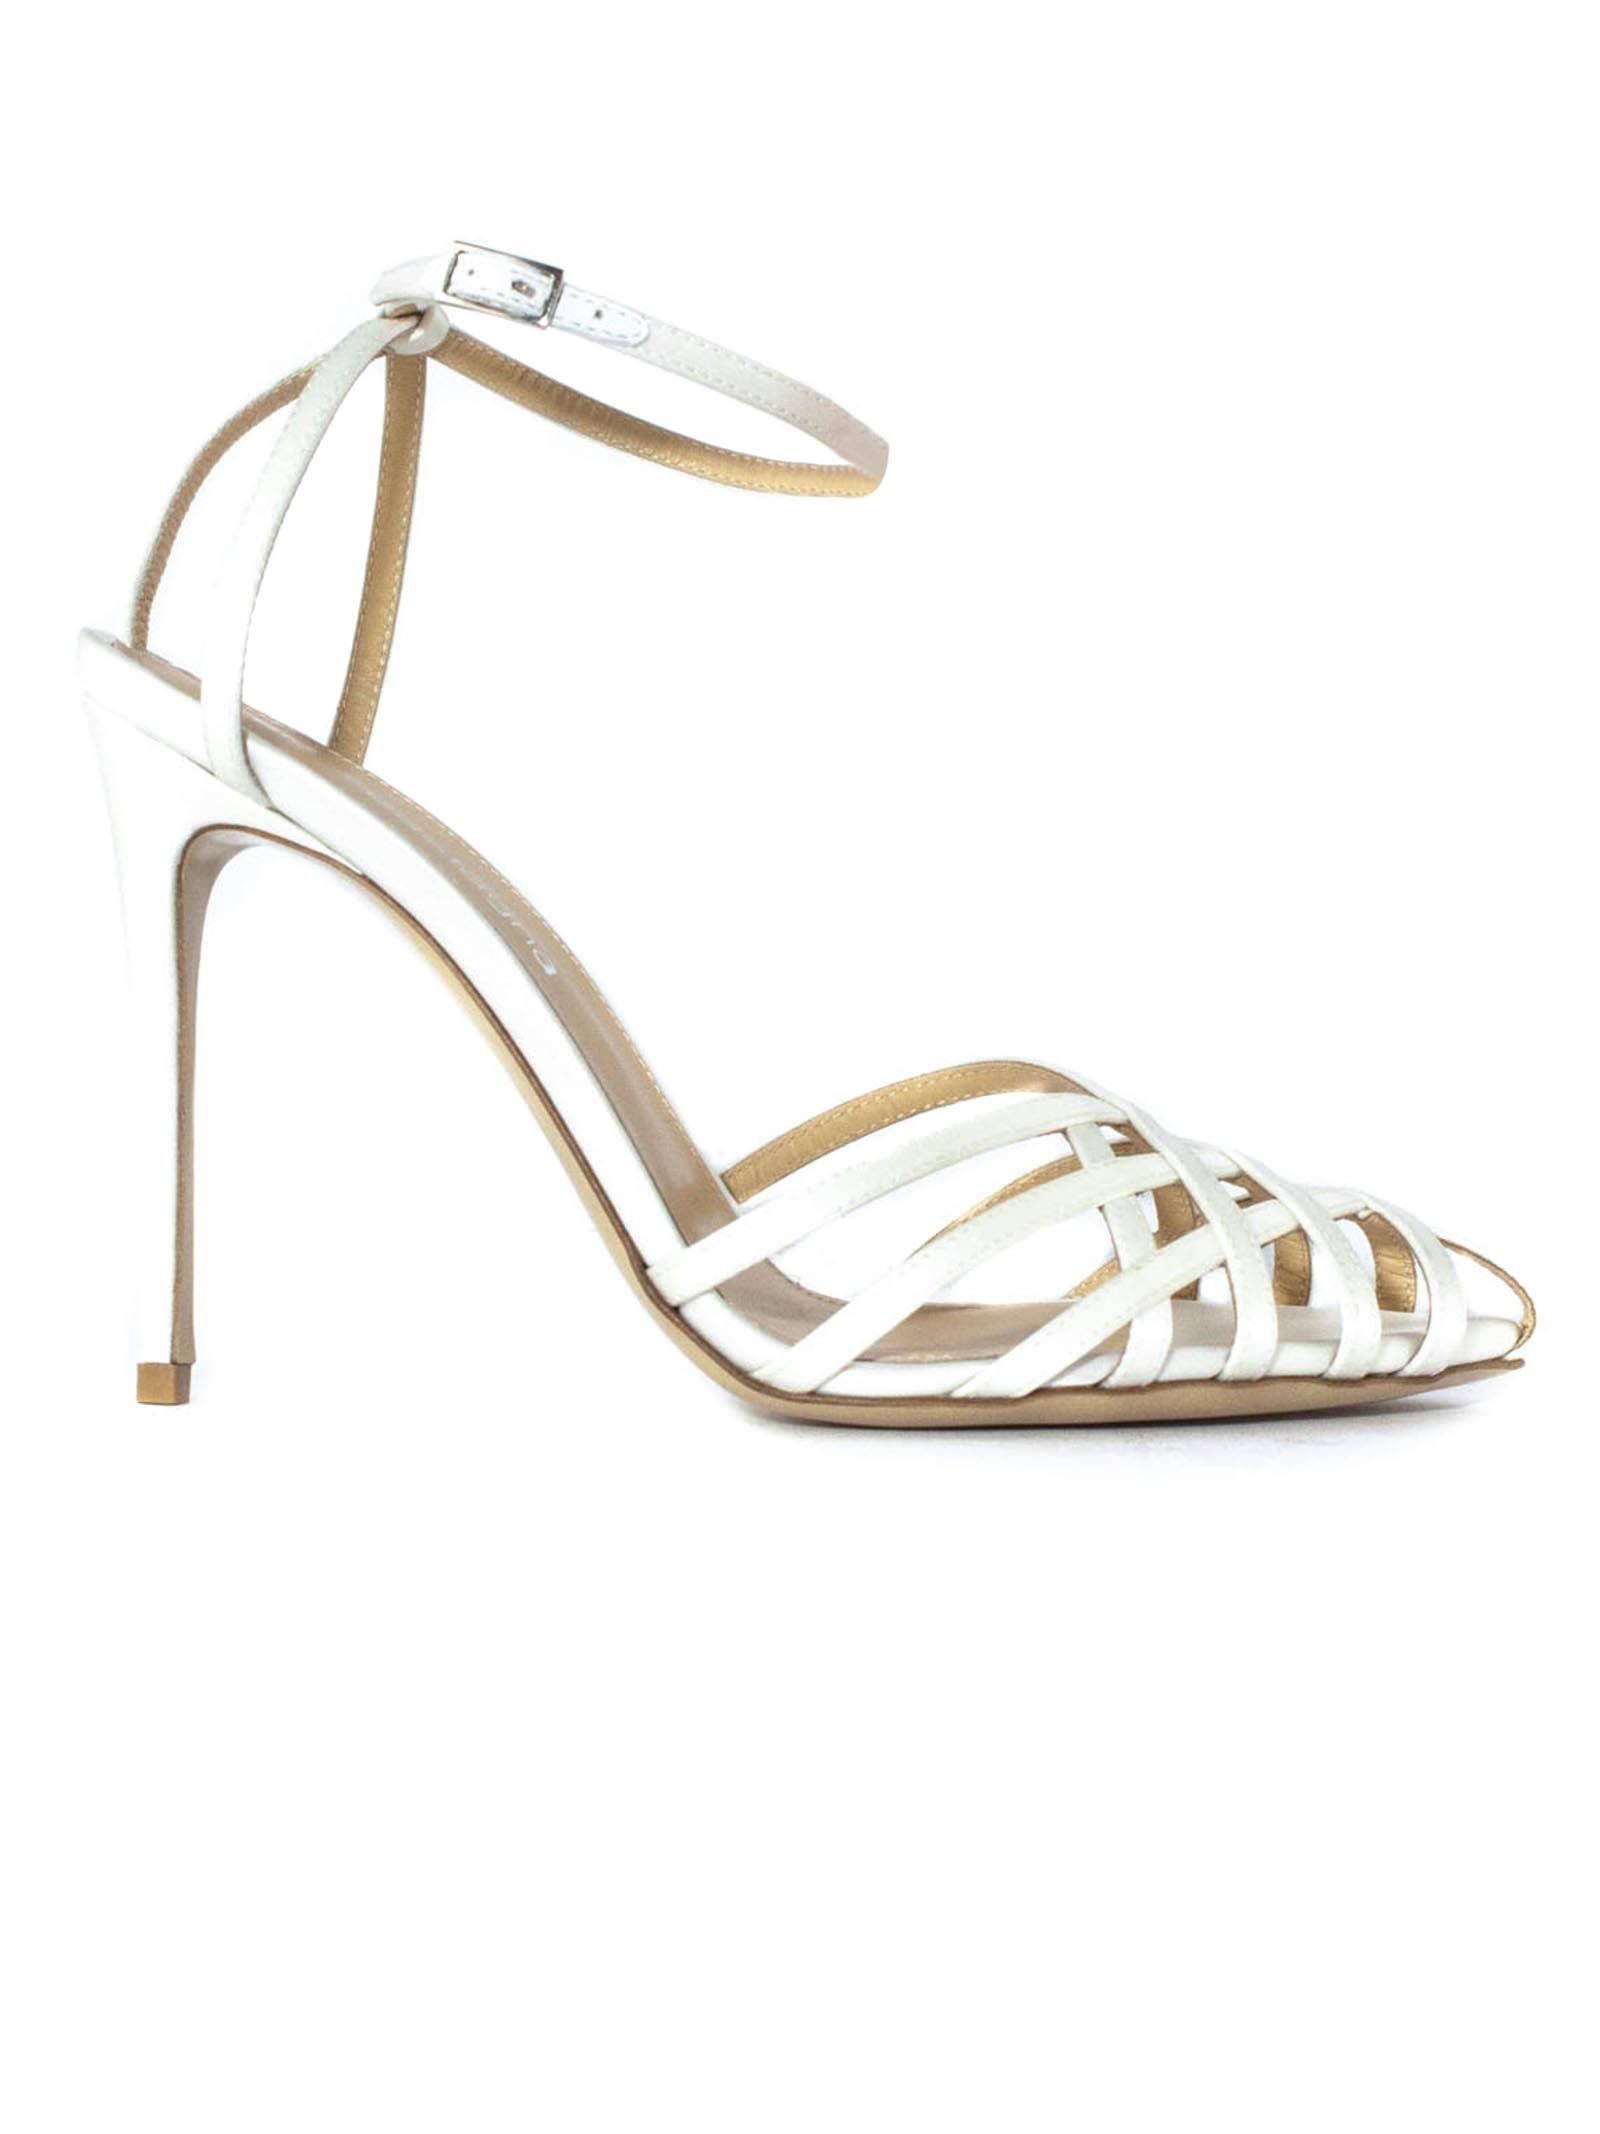 White Satin Miami Sandals